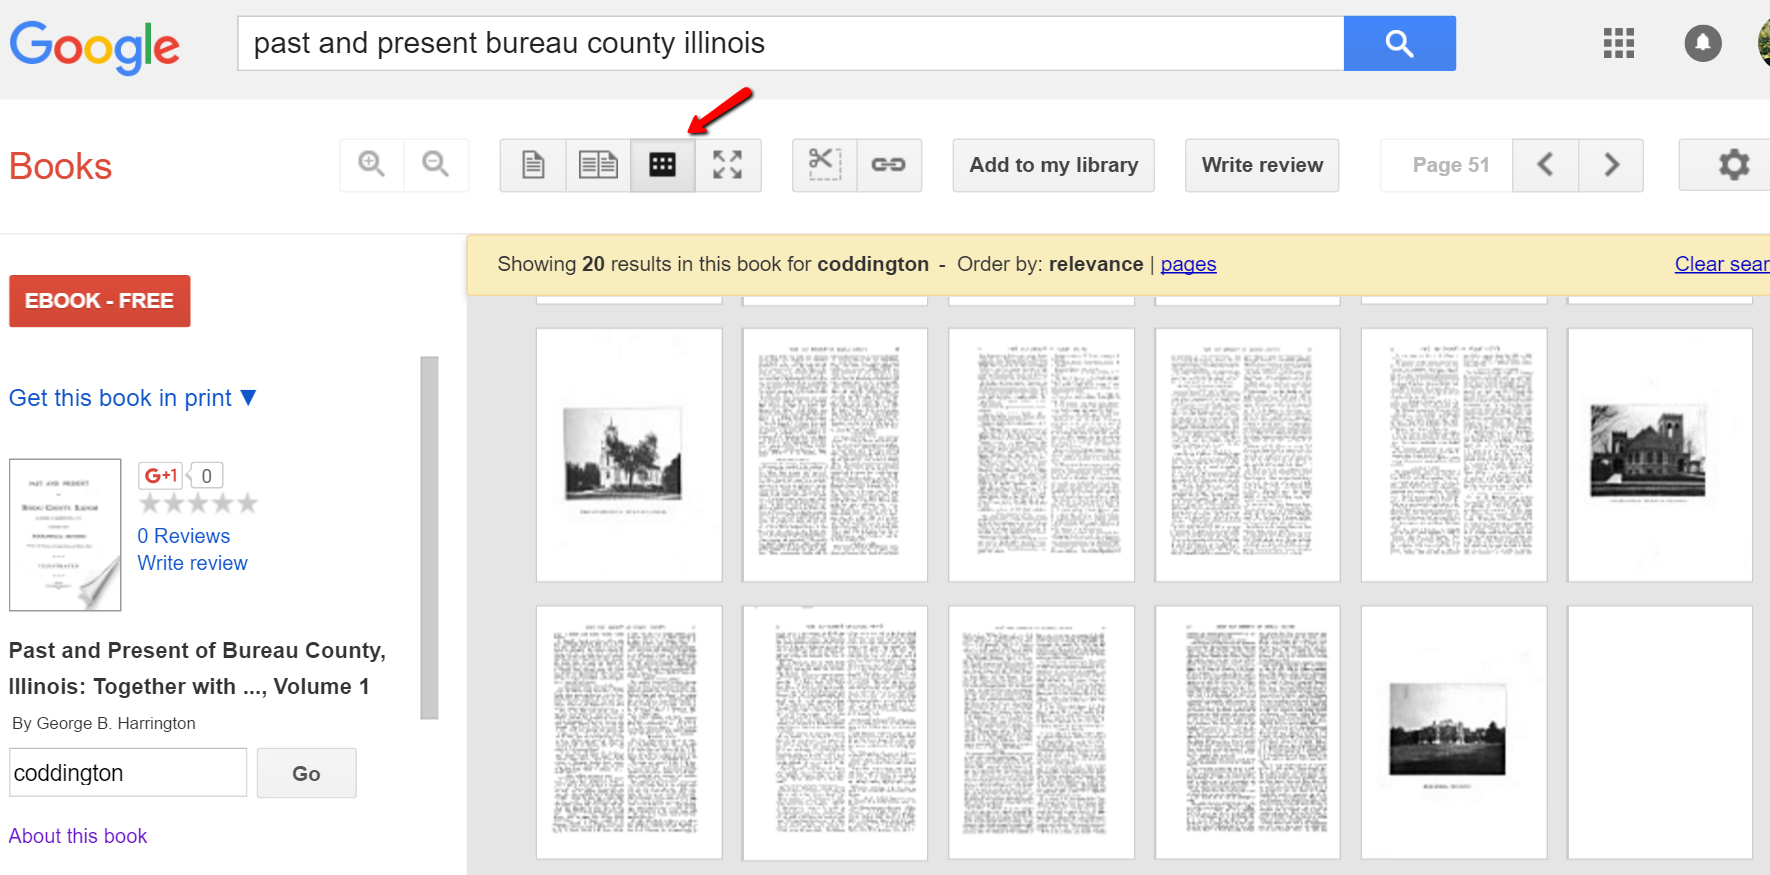 Google books image search icon